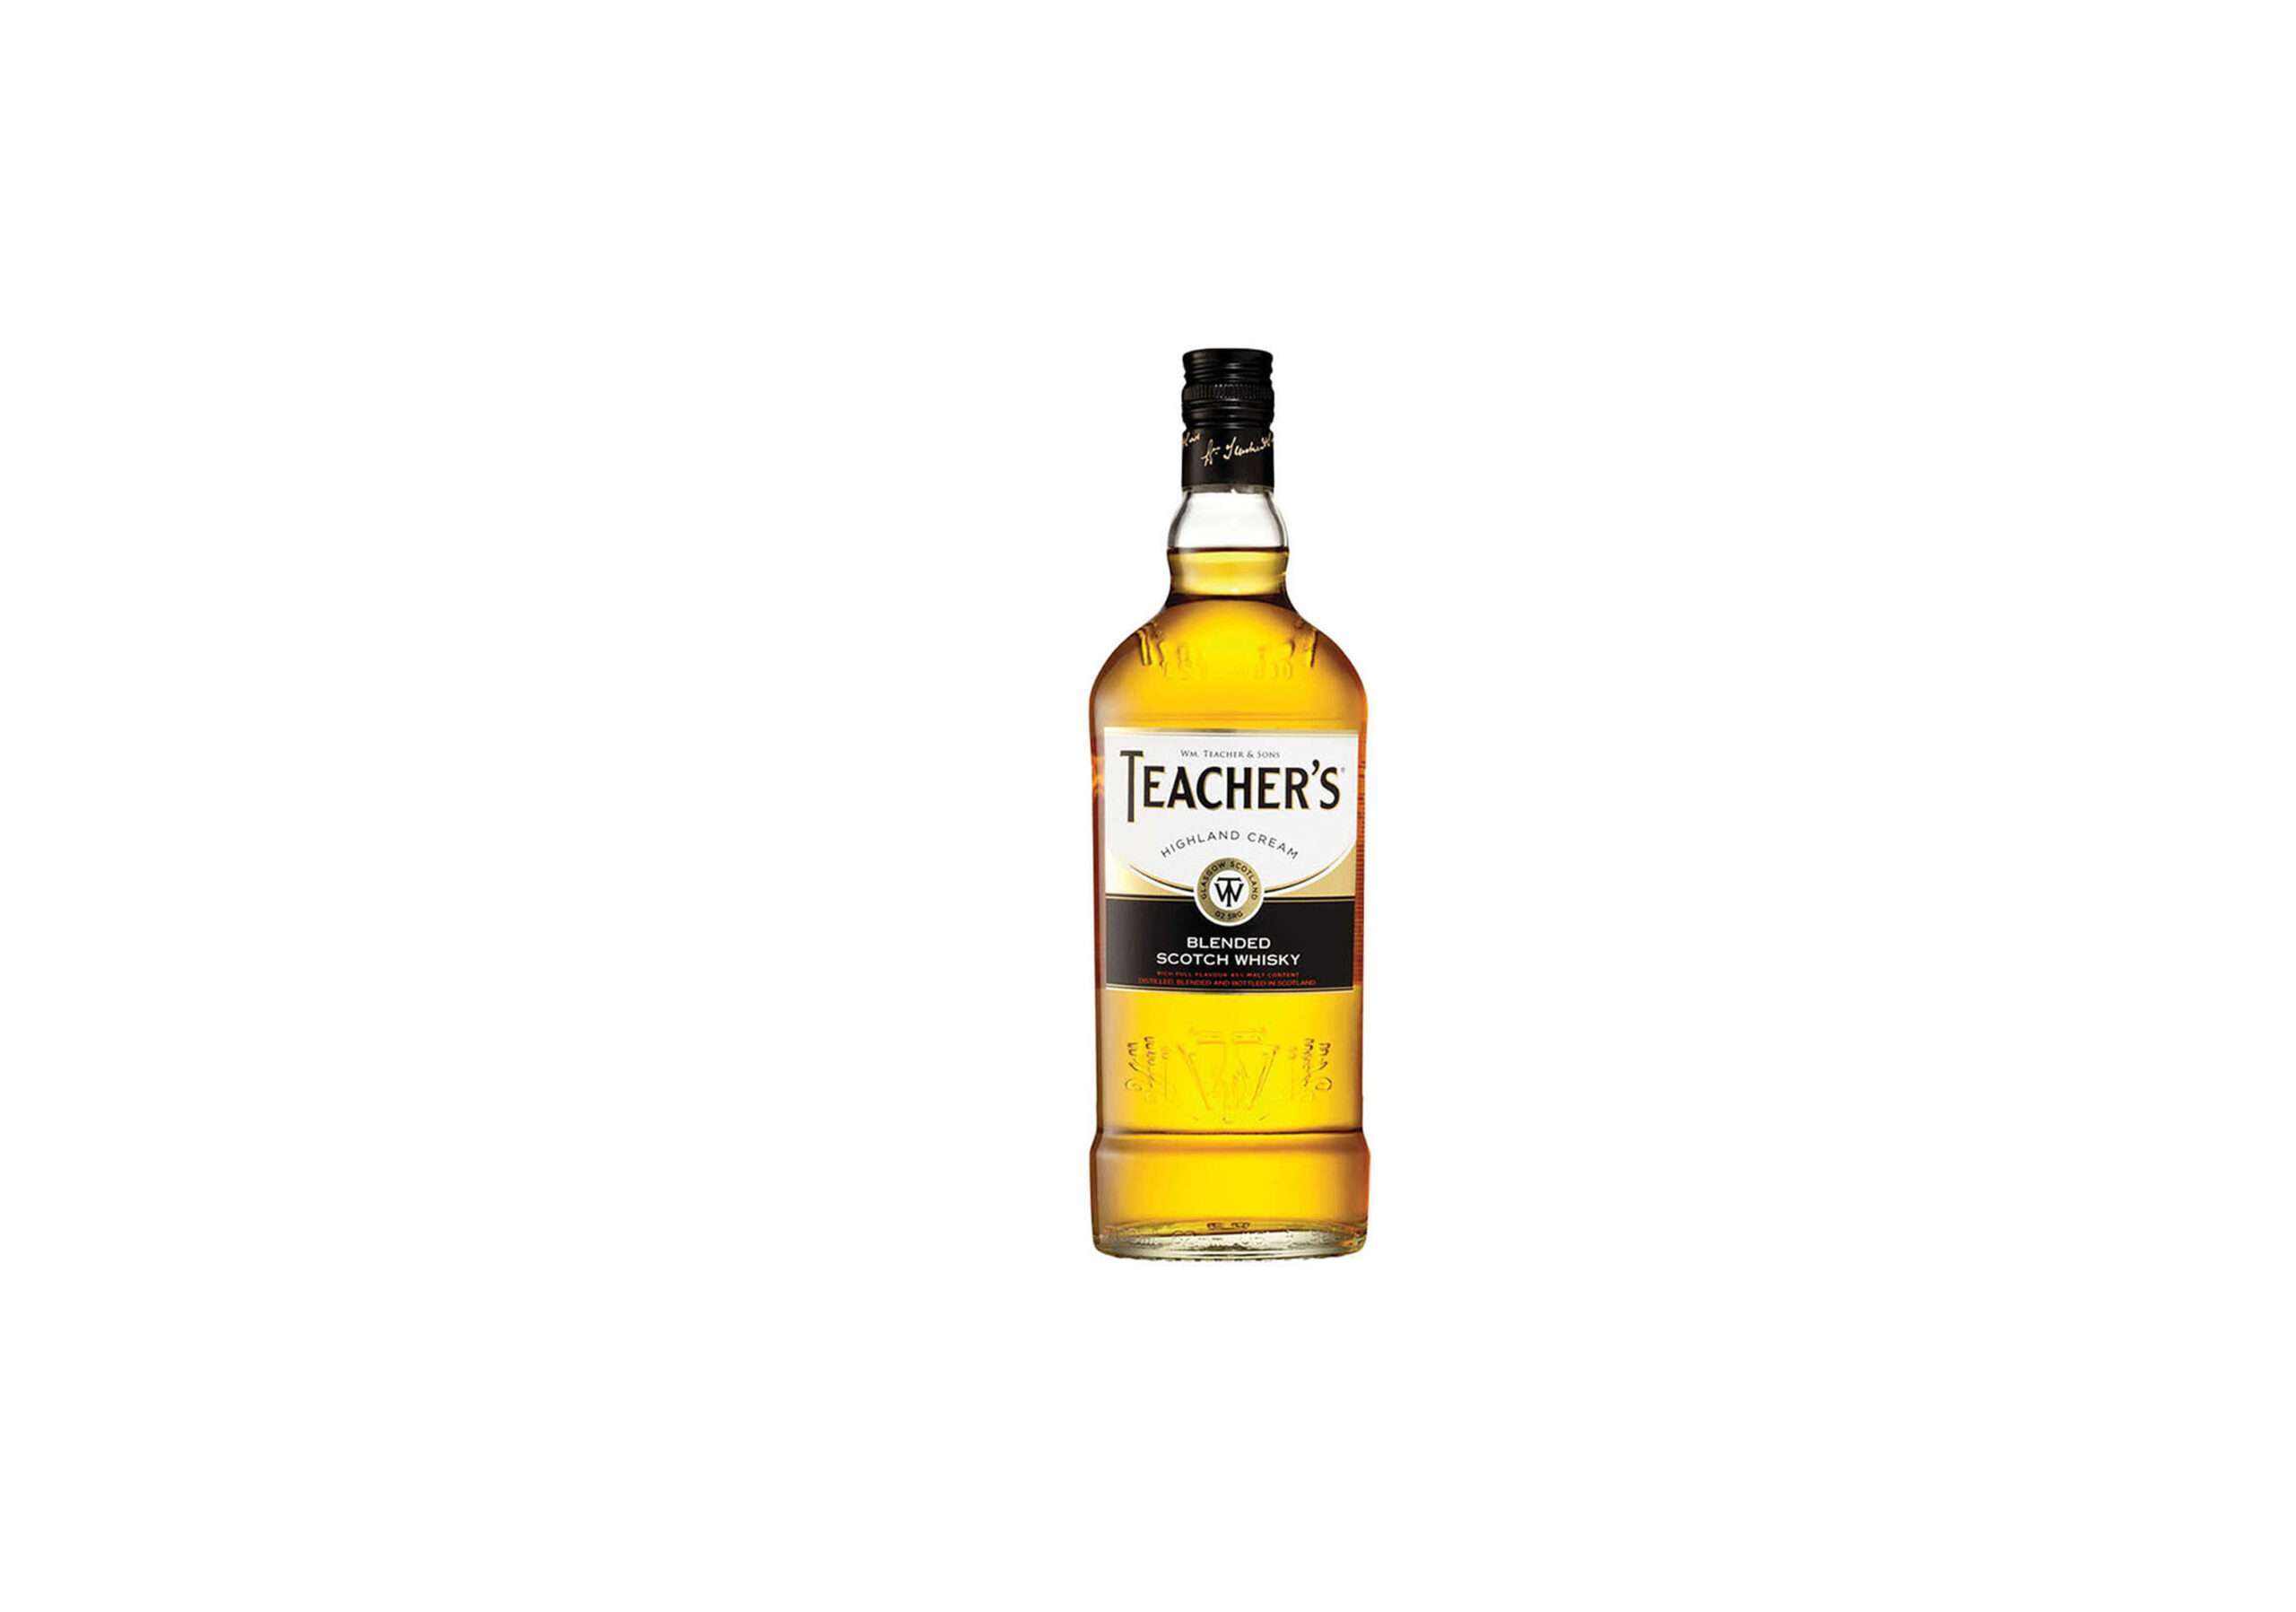 BLND Scotch Whisky: Teacher's 40%